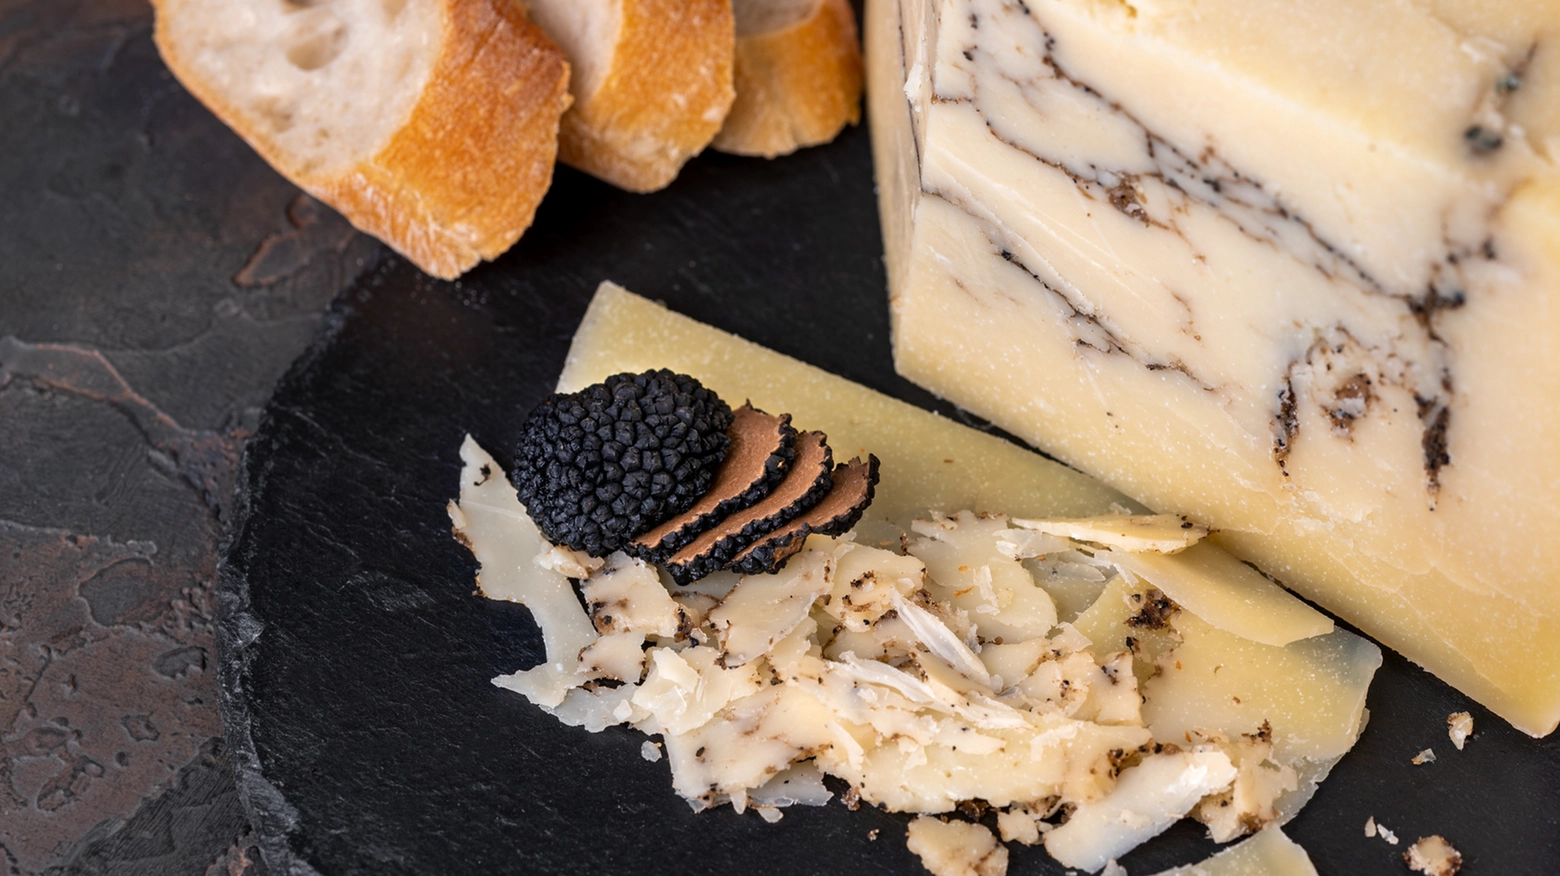 Dal formaggio di fossa al tartufo, le prelibatezze del territorio protagoniste di fiere e sagre nel Riminese